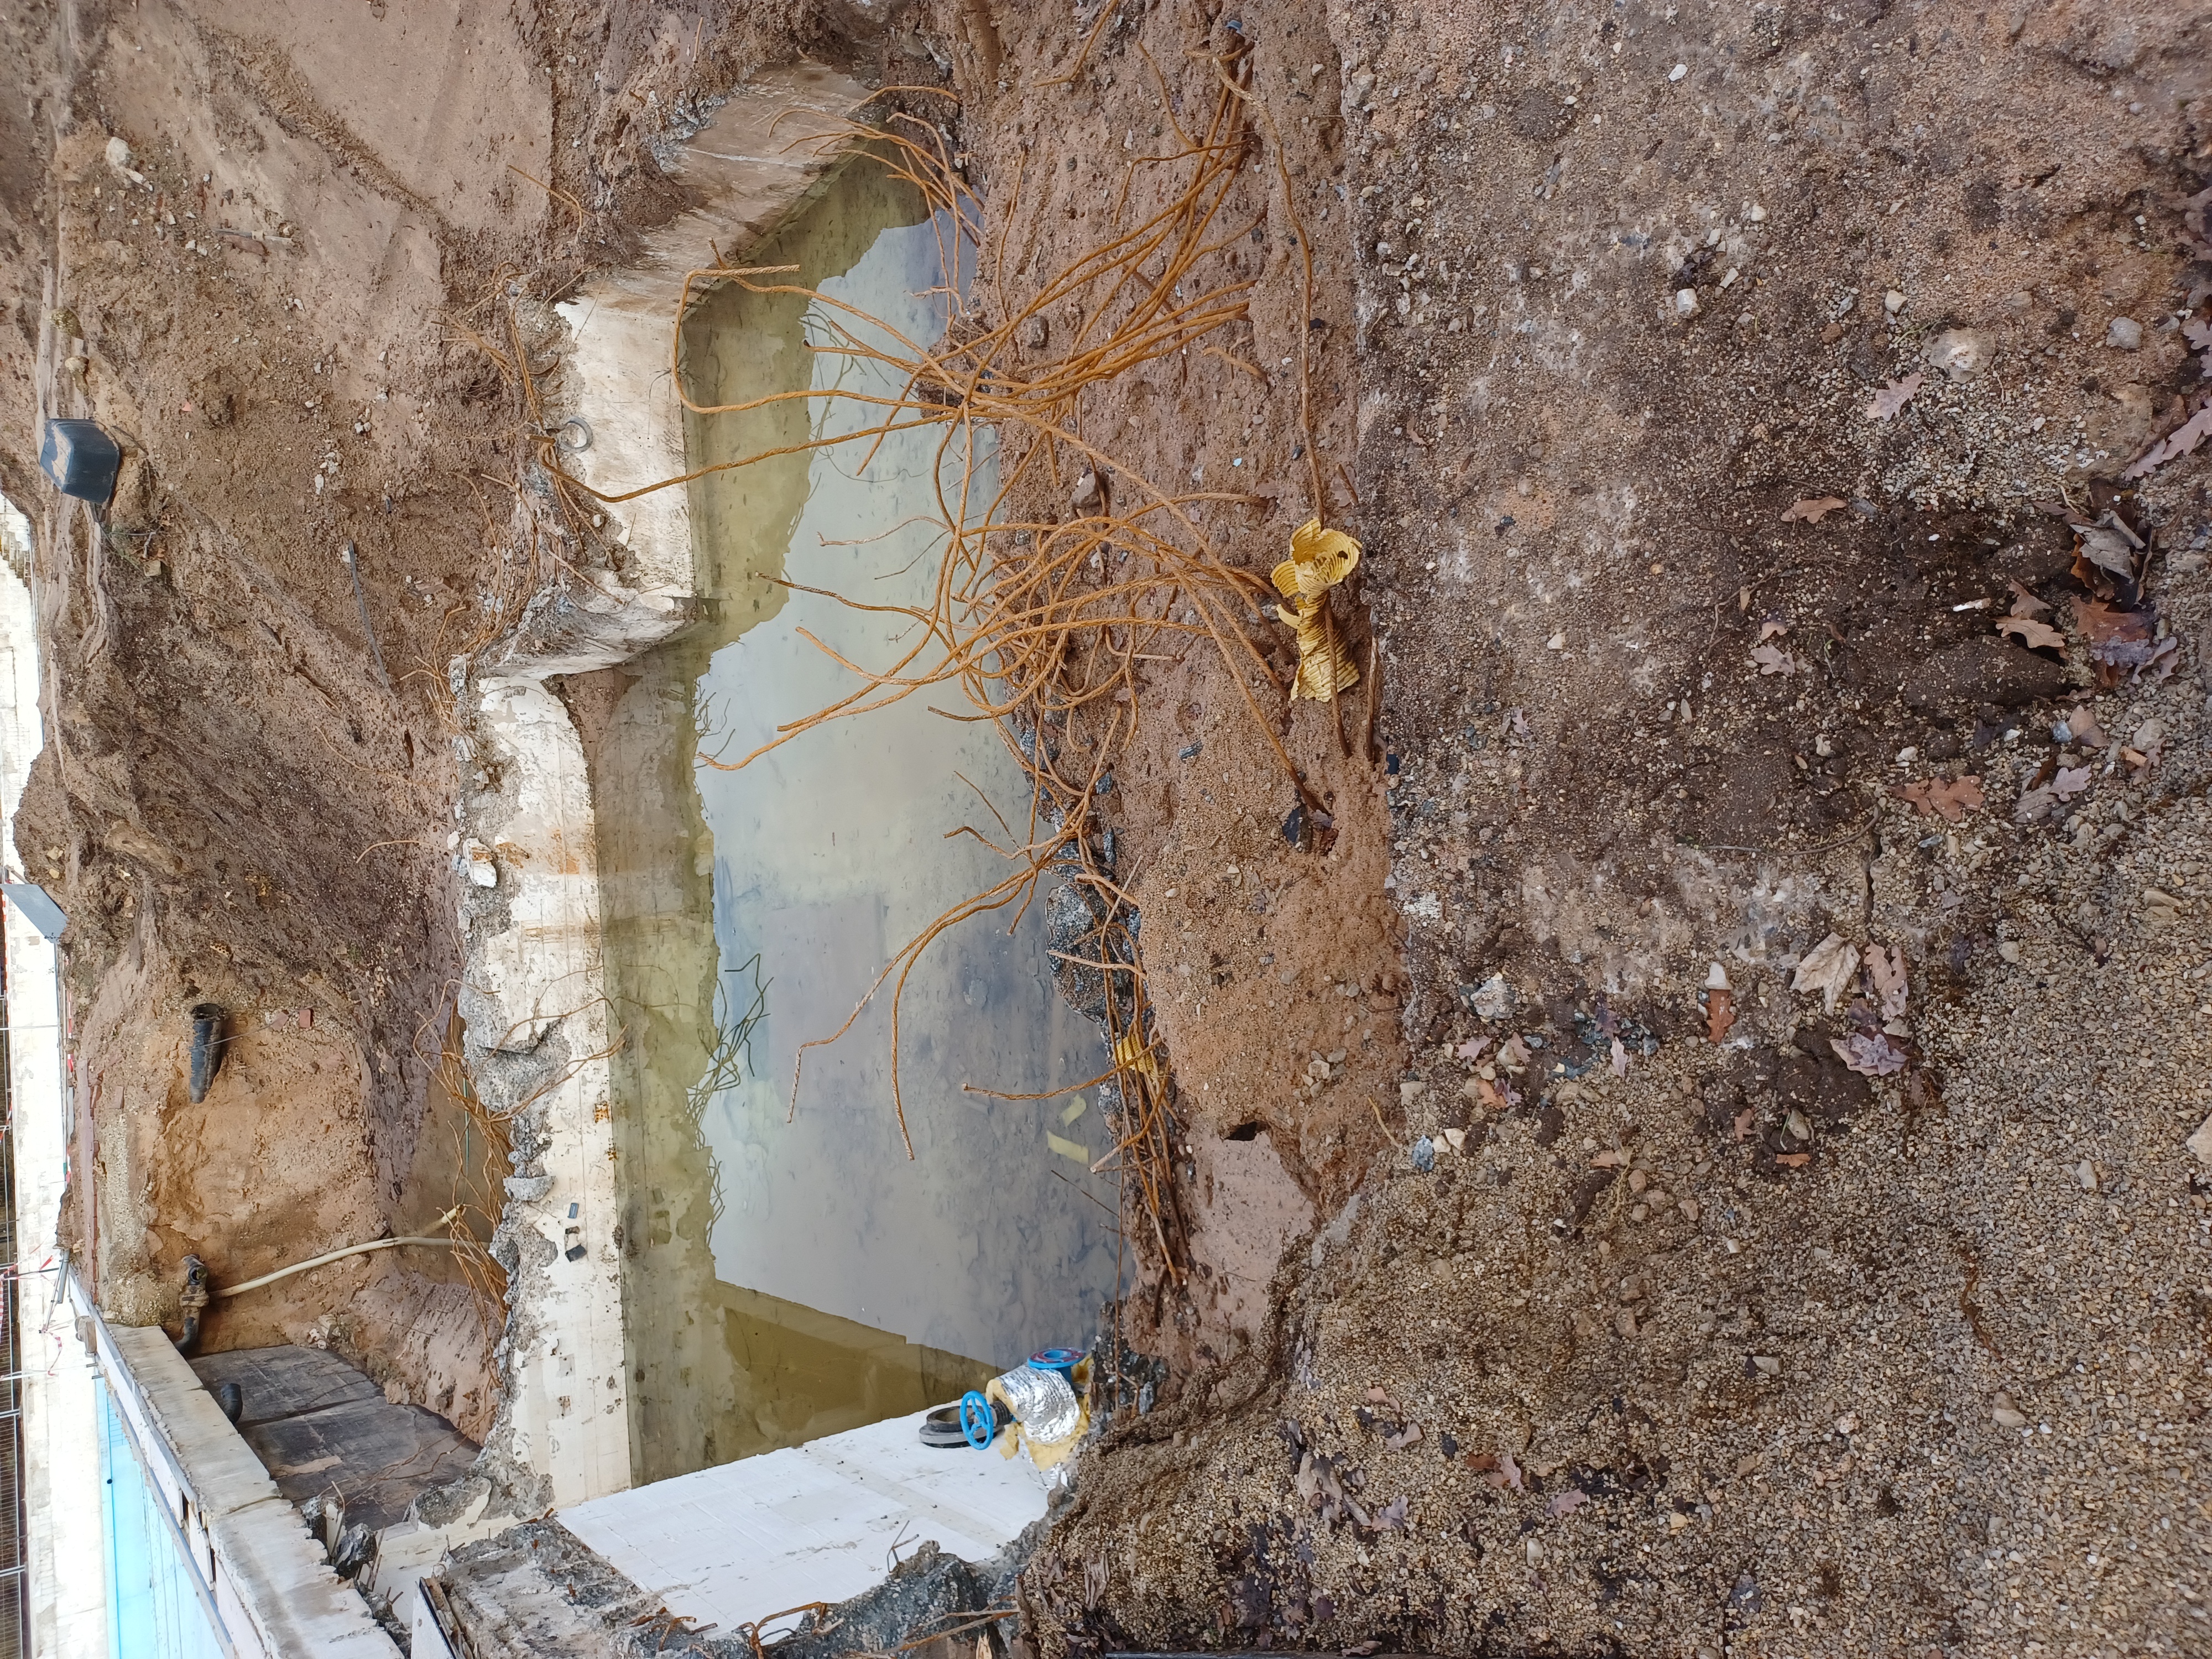 Das Bild zeigt ein mit Wasser gefülltes Becken auf einer Baustelle. Aus dem Boden ragen Metallstangen. Der Rand ist von Erdhaufen umsäumt.